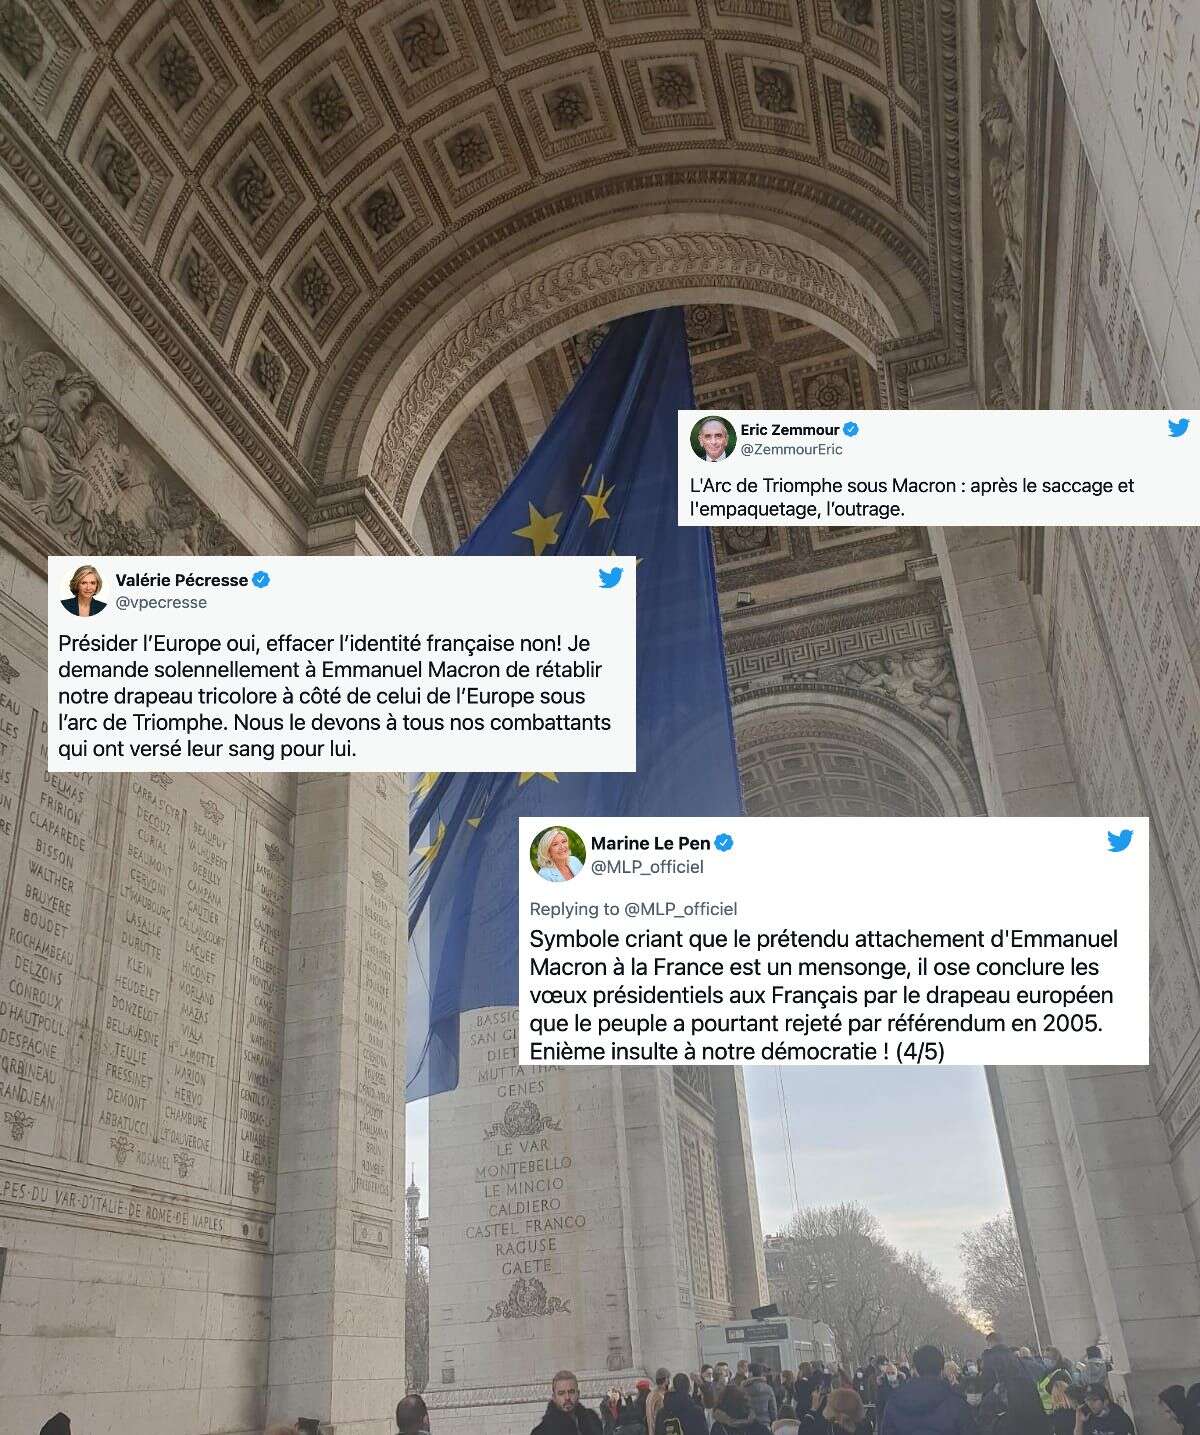 Alors que la France prend la présidence de l'Union européenne ce 1er janvier 2022, le symbole du drapeau européen flottant sous l'Arc de Triomphe n'a pas du tout plu aux leaders conservateurs.